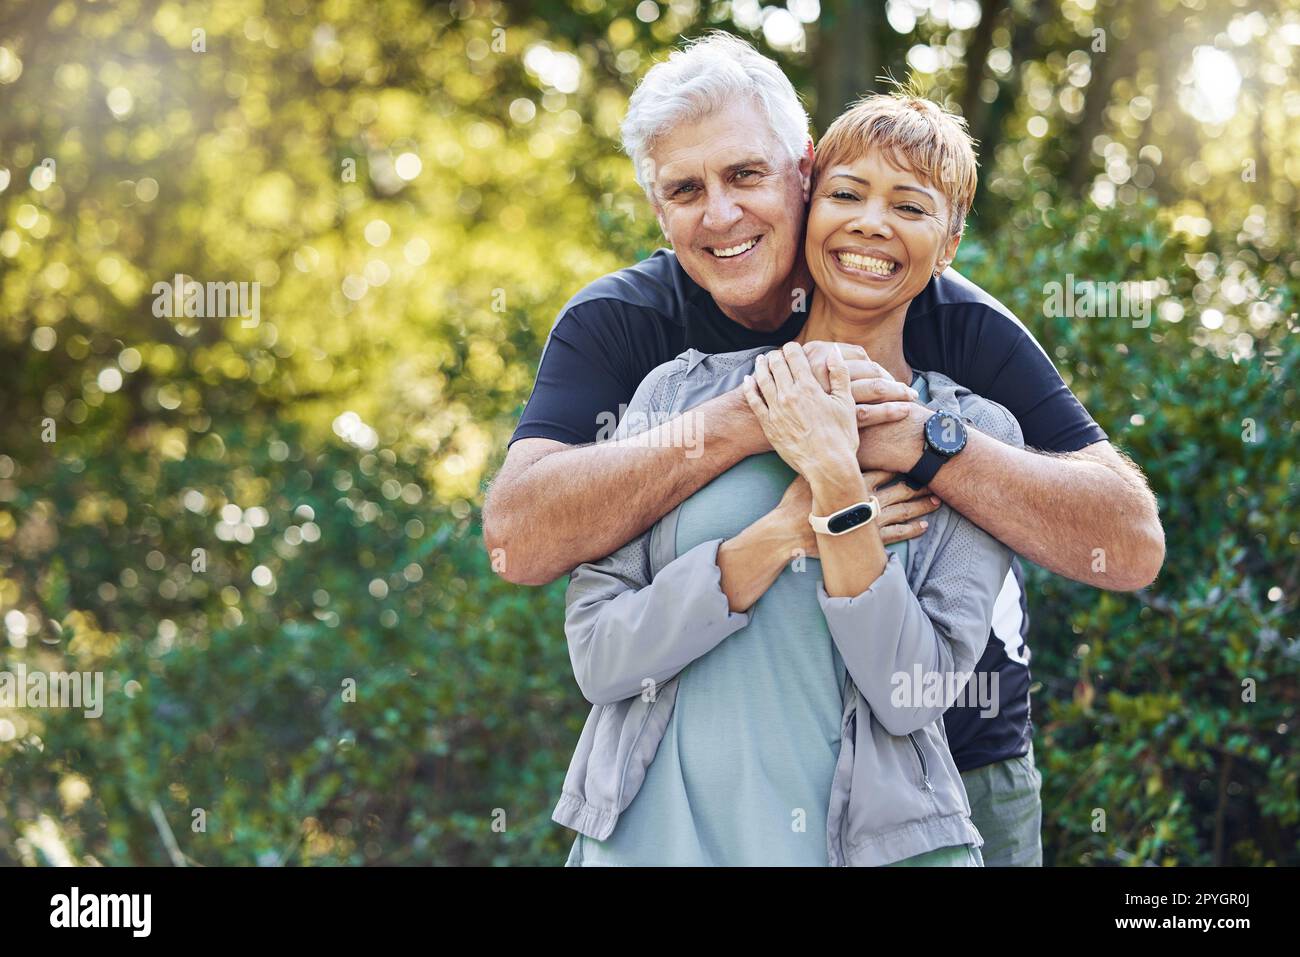 Natur, Liebe und Mann umarmen seine Frau mit Sorgfalt, Glück und Zuneigung während eines Spaziergangs im Freien. Glückliche Romantik und Porträt eines Seniorenpaares im Ruhestand, das sich im Wald, Wald oder Park umarmt. Stockfoto